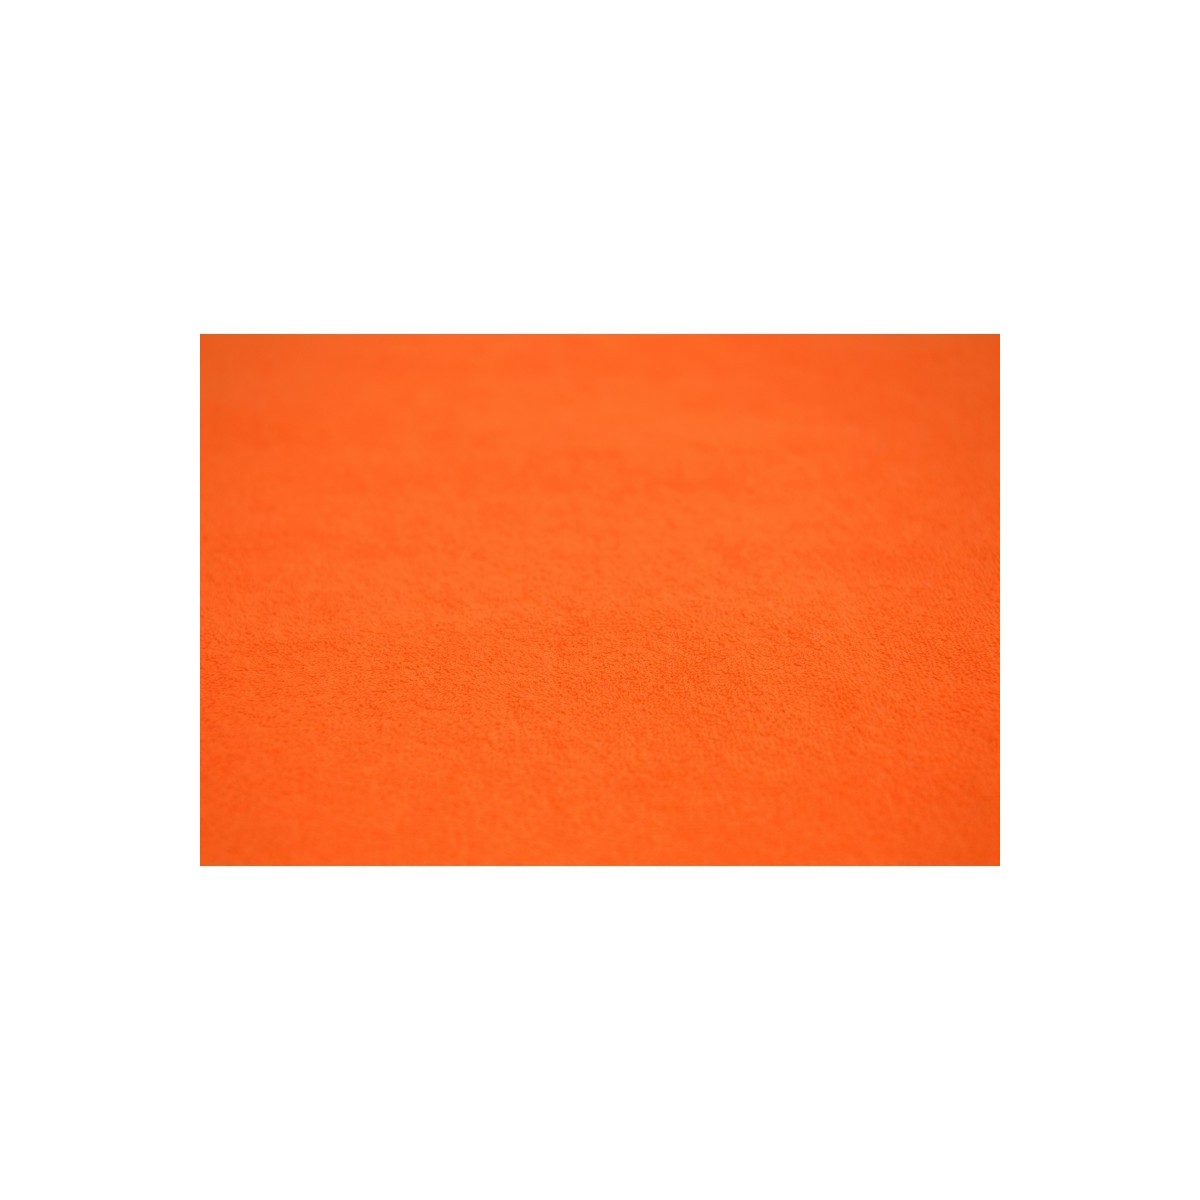  Pościel frotte gruba 160x200 3-częściowa pomarańczowa